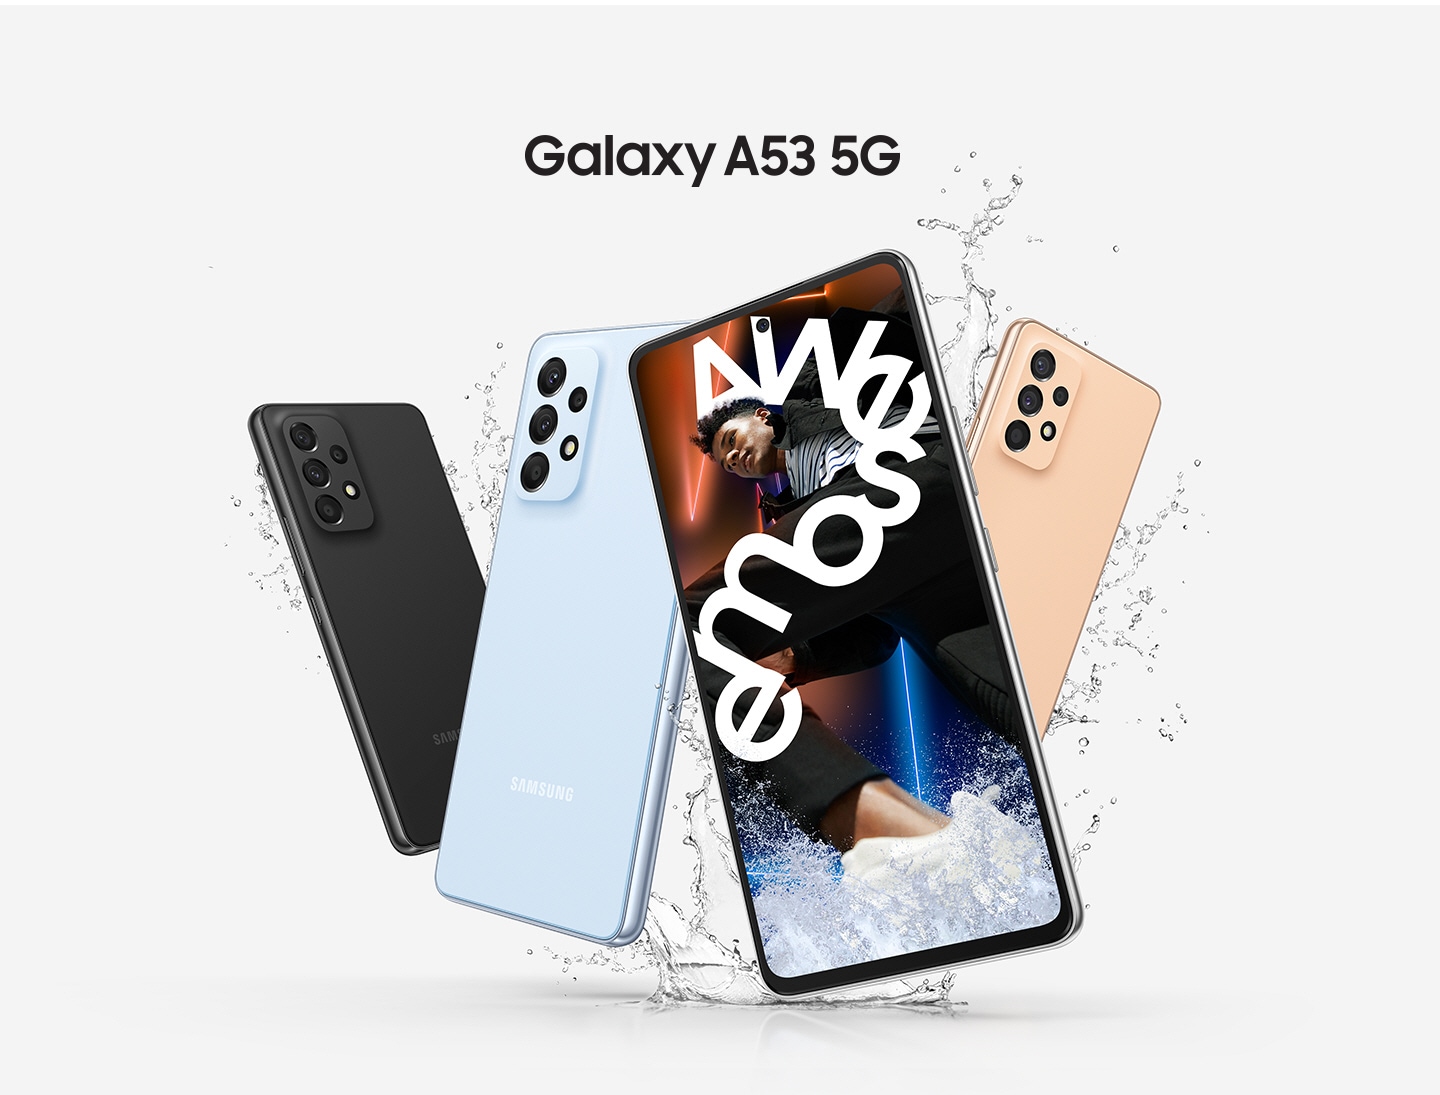 Prikazana su četiri uređaja Galaxy A53 5G, tri sa stražnje strane kako bi se vidjele crna, plava i boja breskve, a jedini Galaxy A53 5G prikazan s prednje strane pokazuje živopisnu sliku muškarca omotanoga bijelim tekstom: Nevjerojatno. 